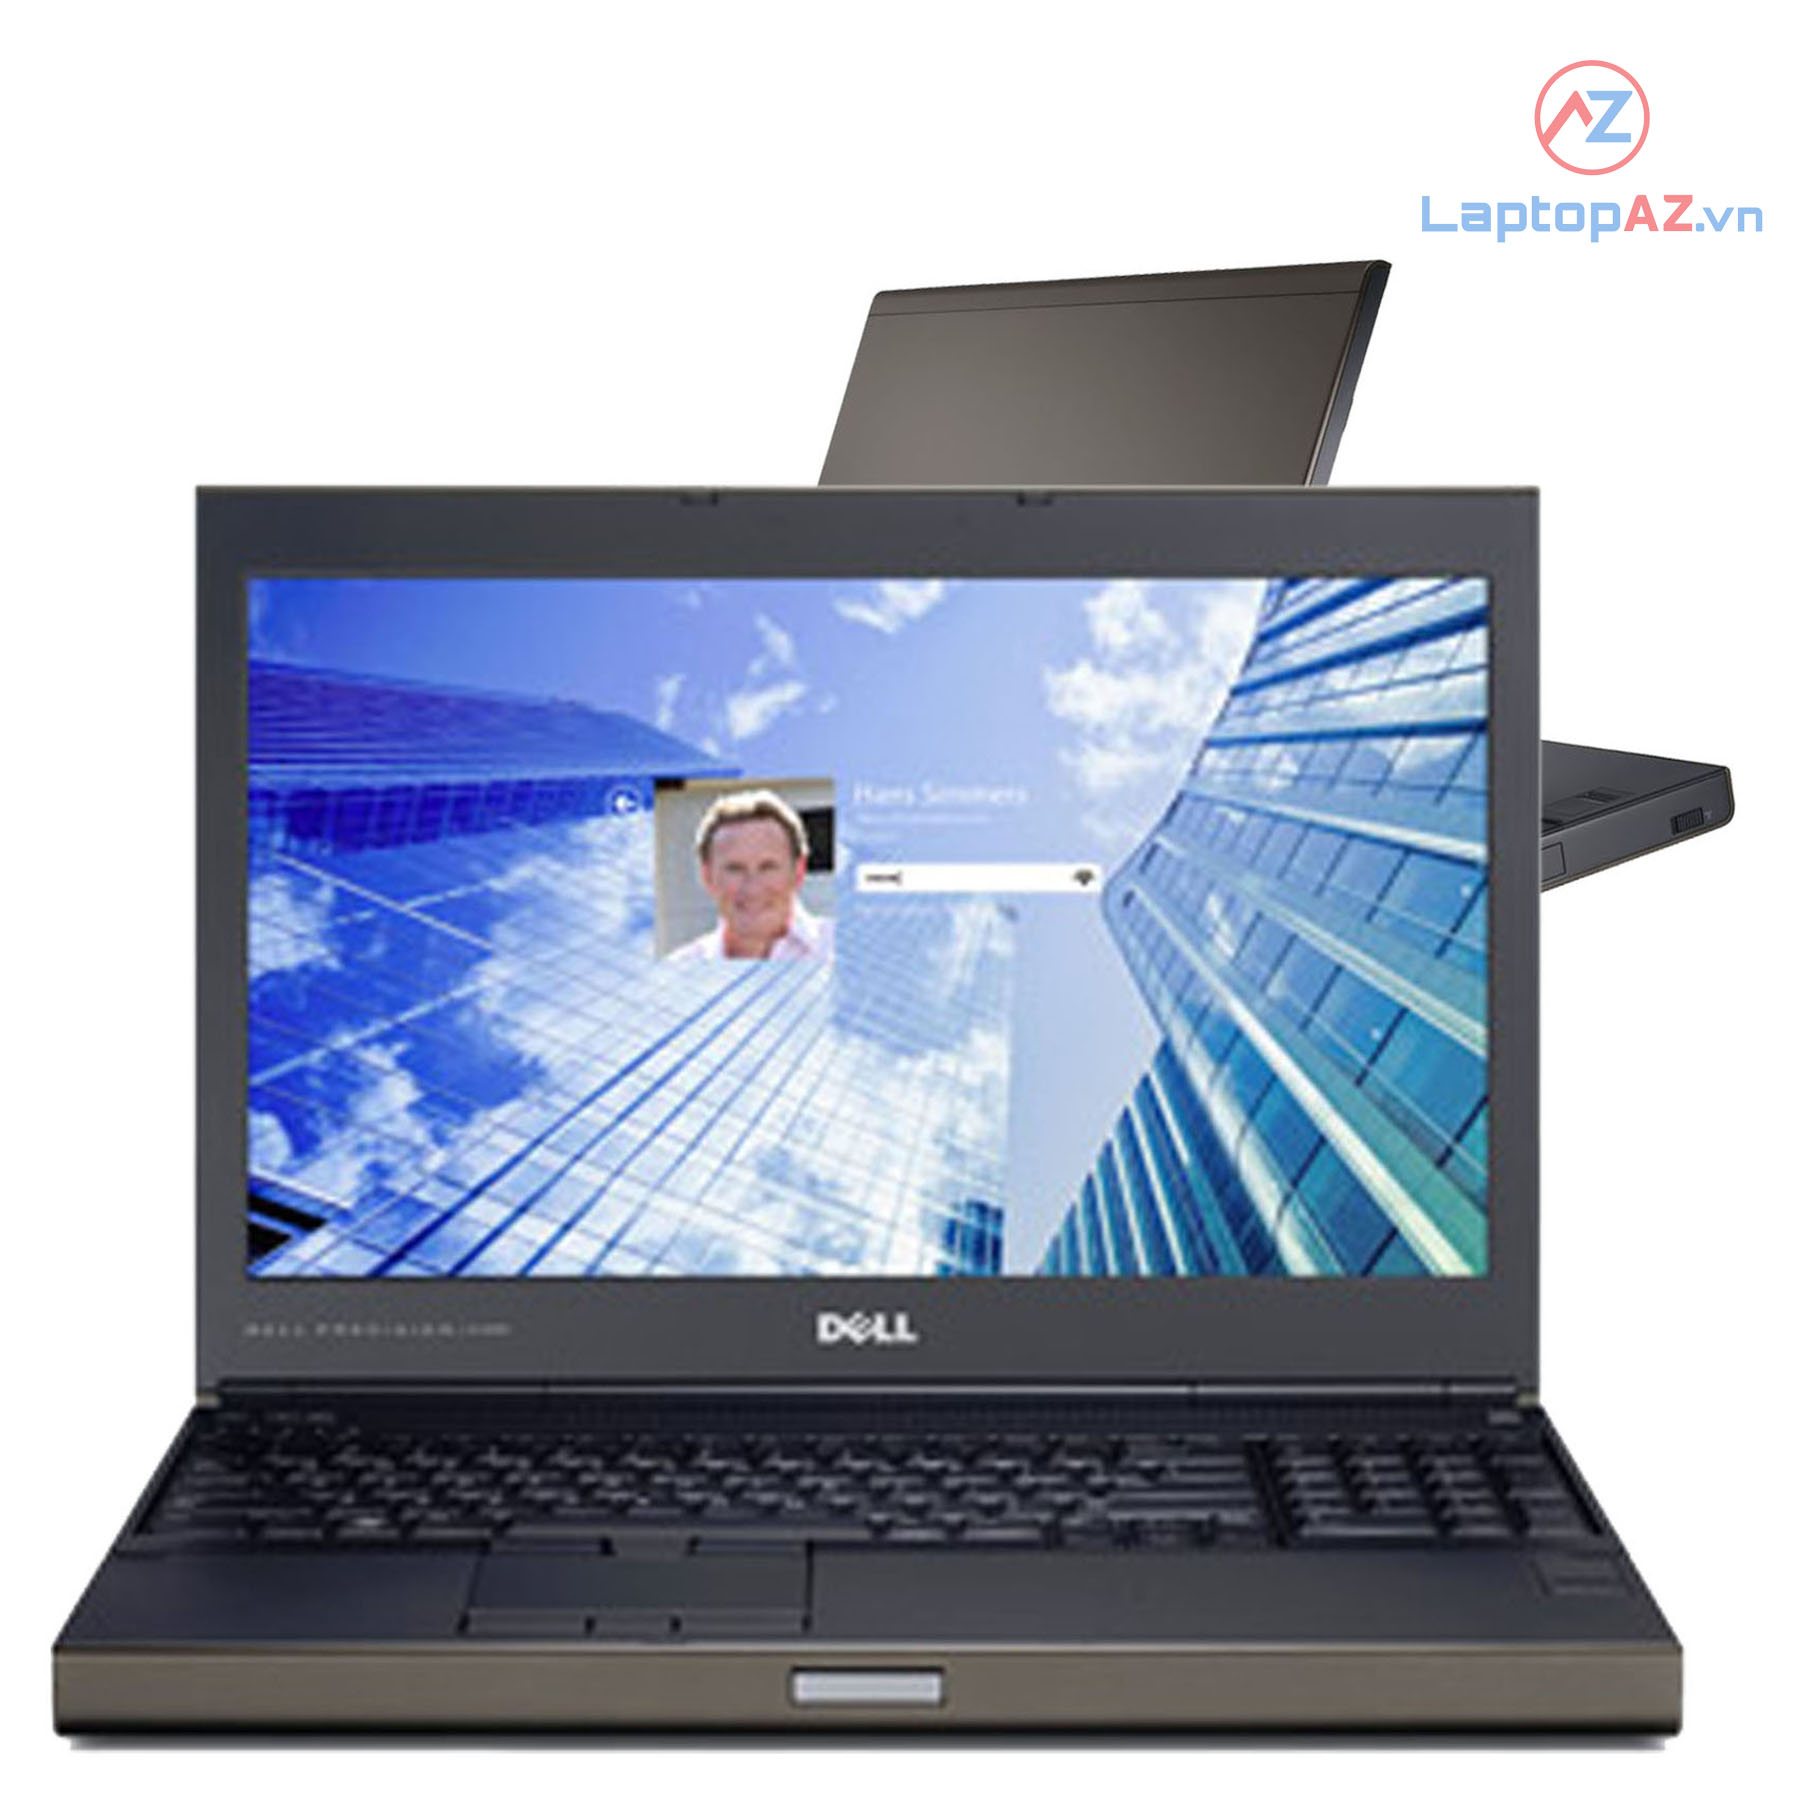 (Mới 99%) Laptop Dell M4800 Core i7-4800MQ, 8GB, 256GB, Quadro K2100M, 15.6 inch FHD